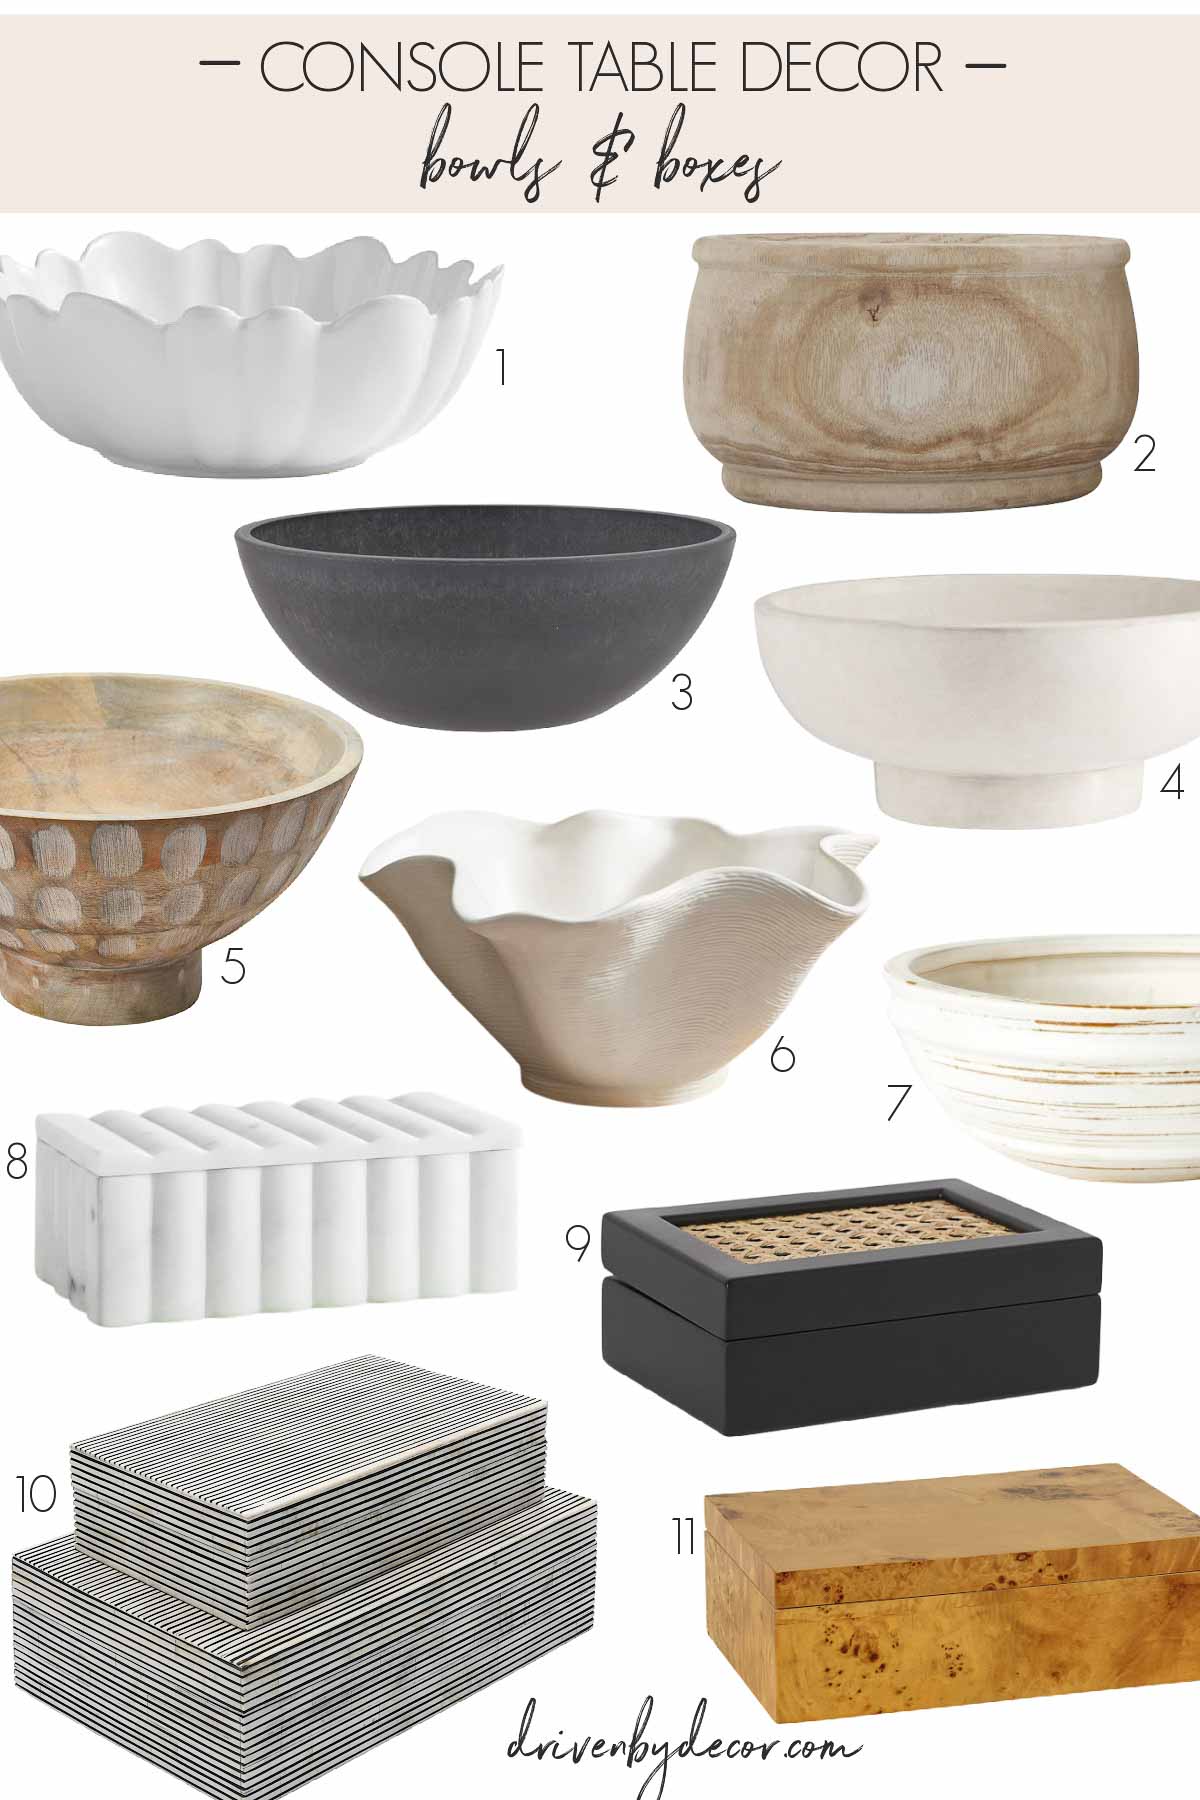 Console table decor - bowls & boxes